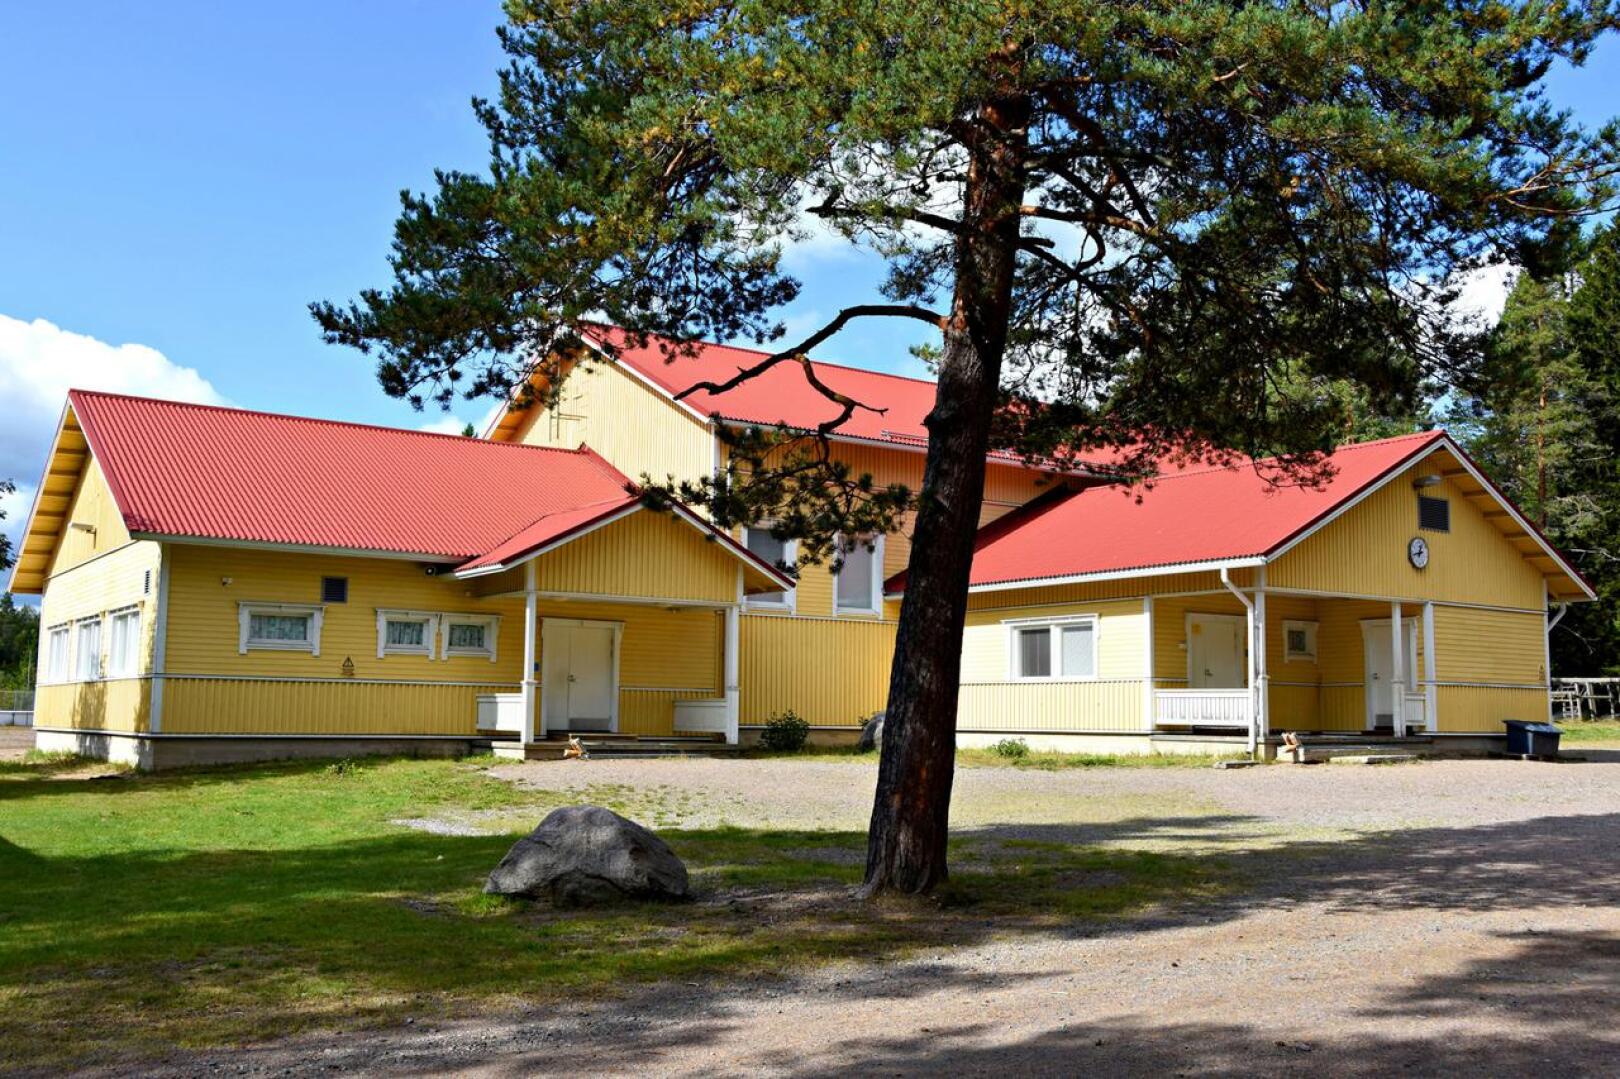 Vatjusjärven koulun soveltuvuutta selvitetään nyt ensisijaisesti 6-vuotiaiden eskarilaisten ryhmälle. Tilat 17 lapselle tarvitaan ensi syksyksi.